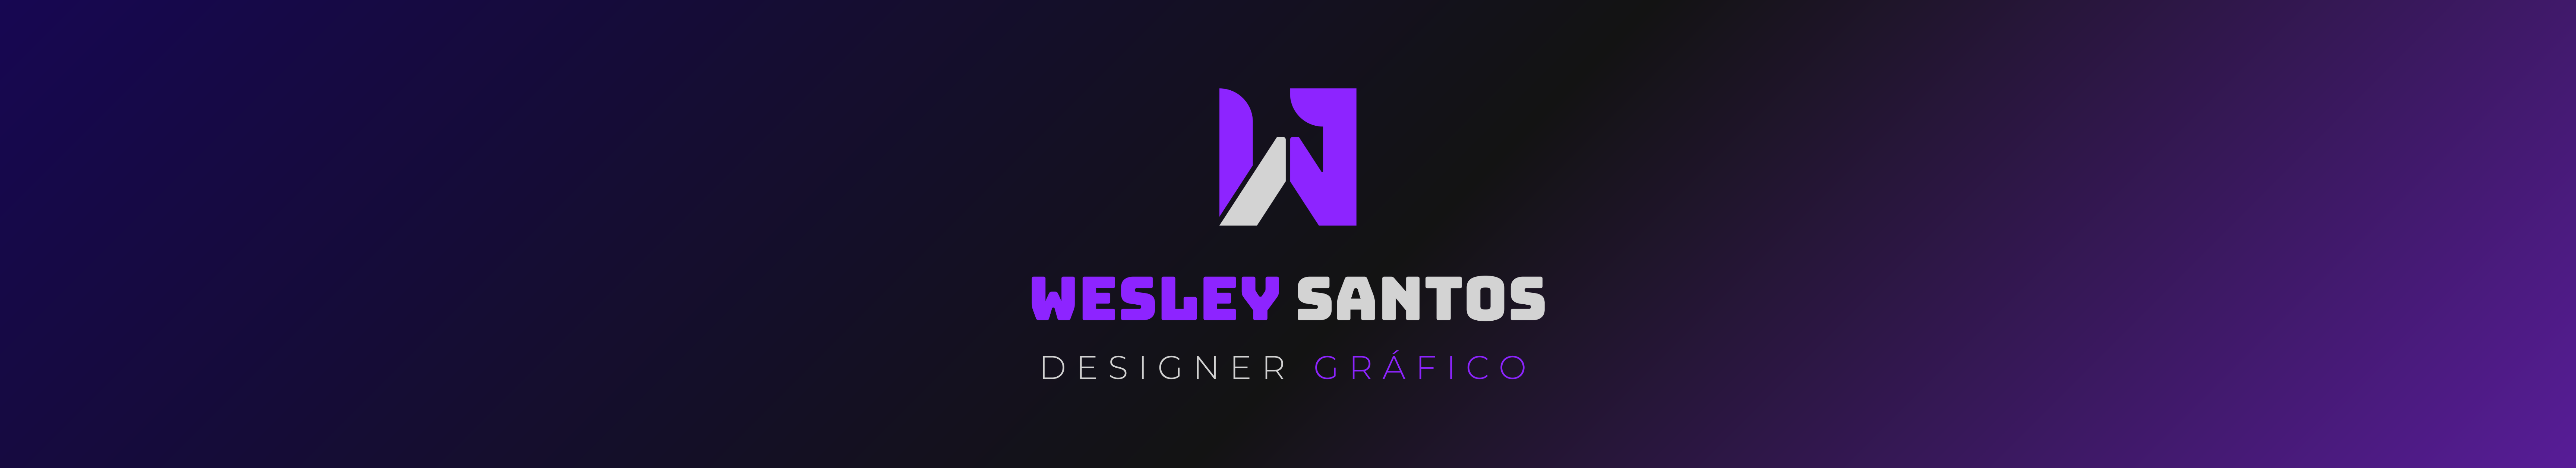 Wesley Santos's profile banner